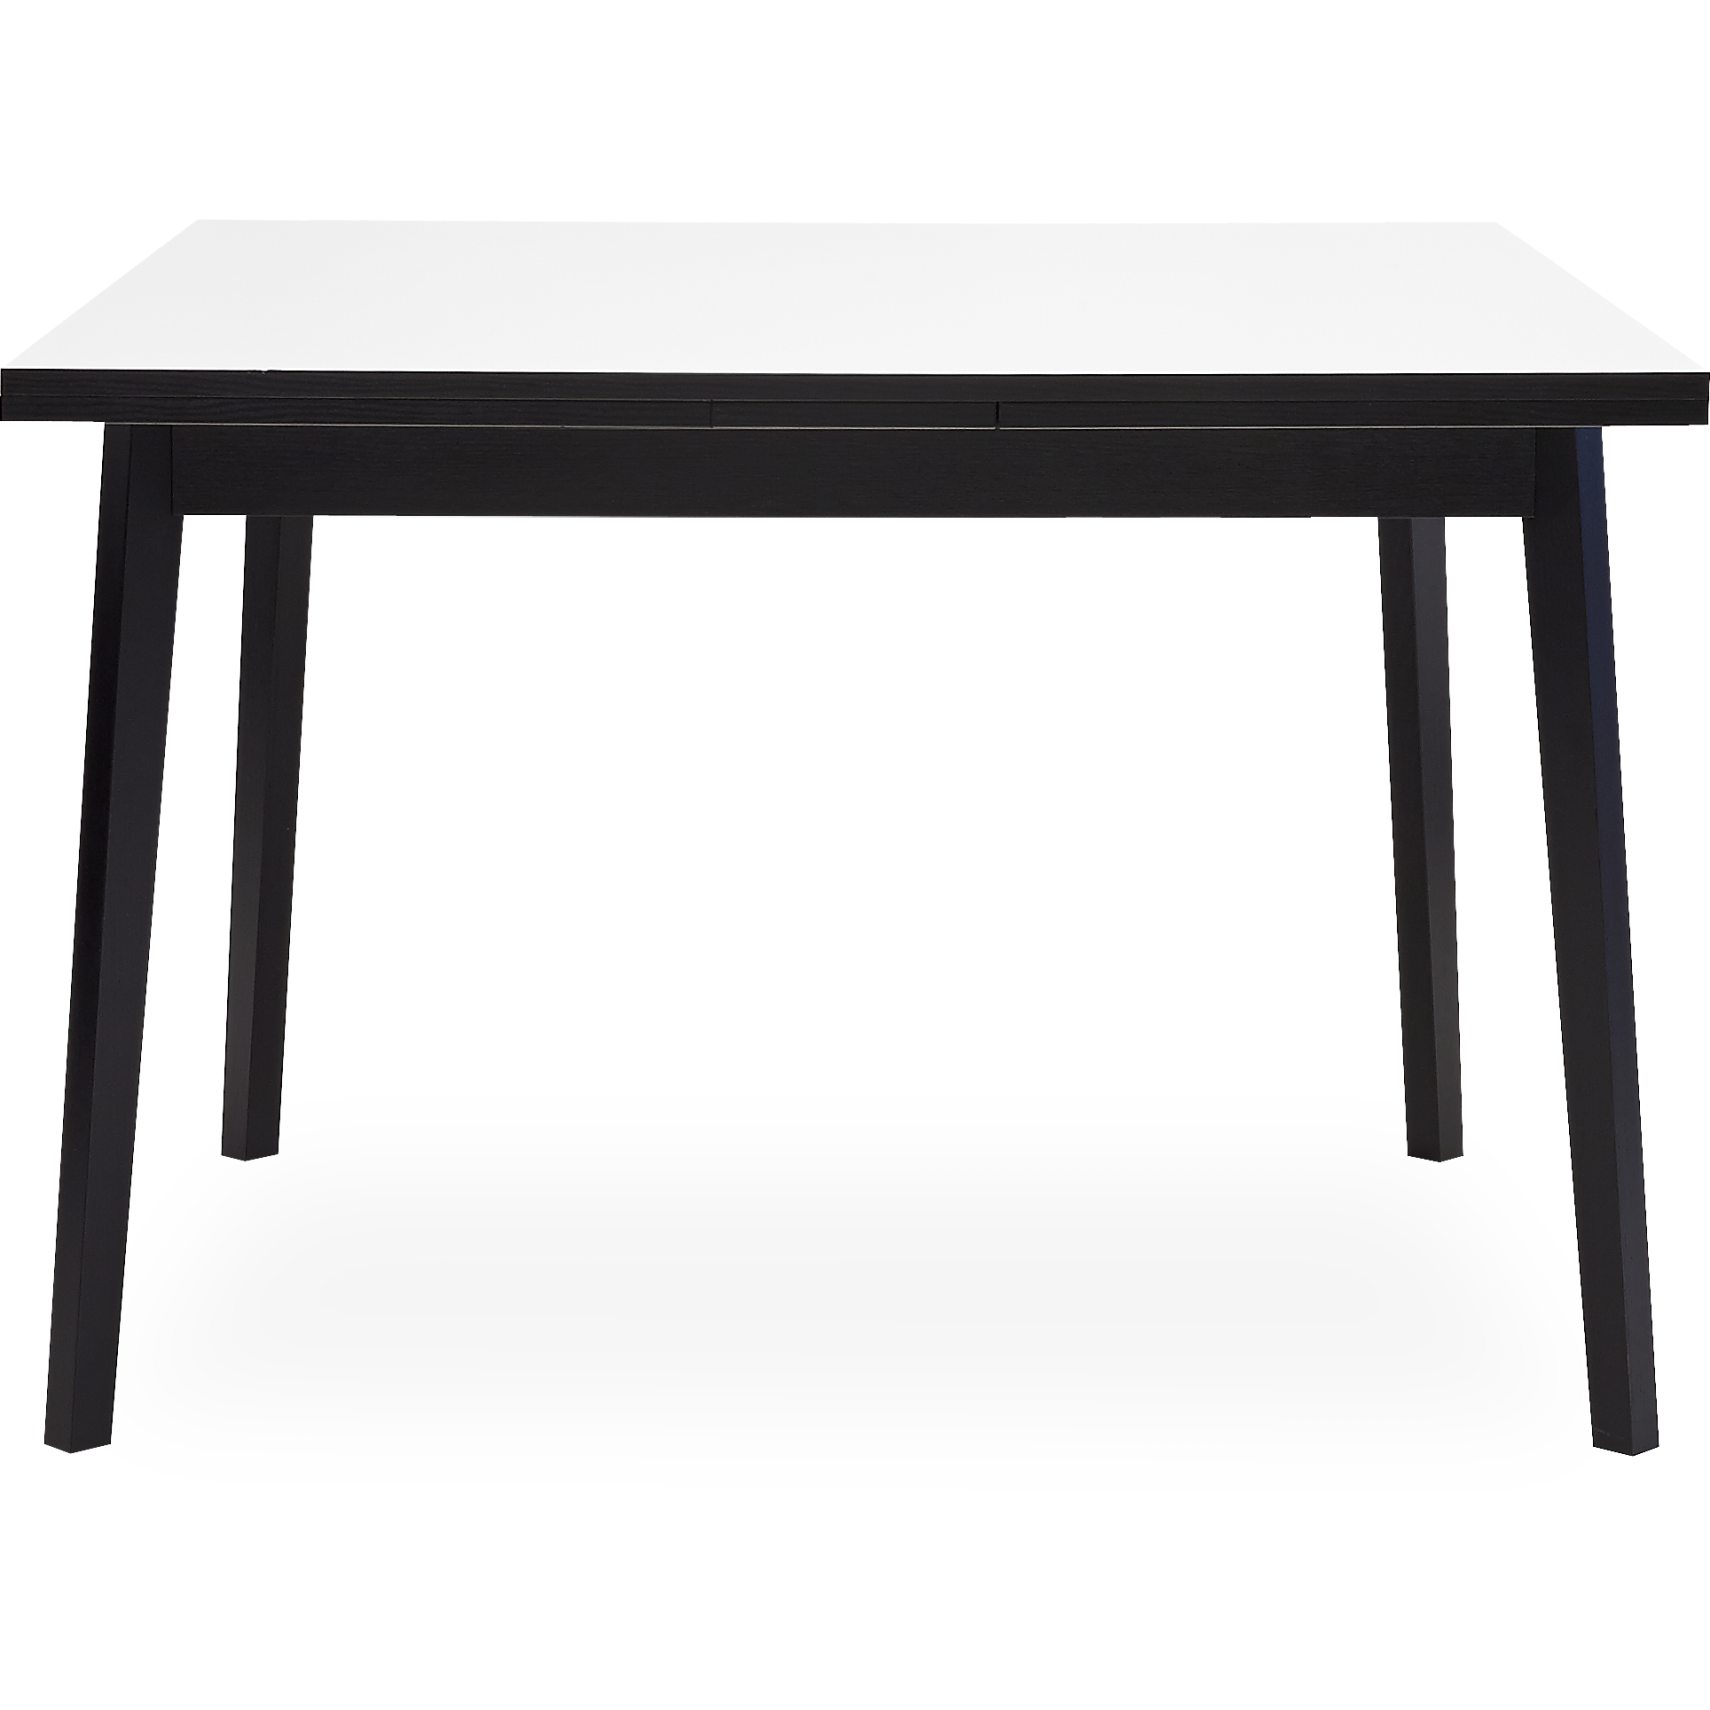 Single Spisebord 90 x 90 x 76 cm - Hvid melamin, lakeret sortmalet egefinér og ben i sortmalet lak. massiv eg